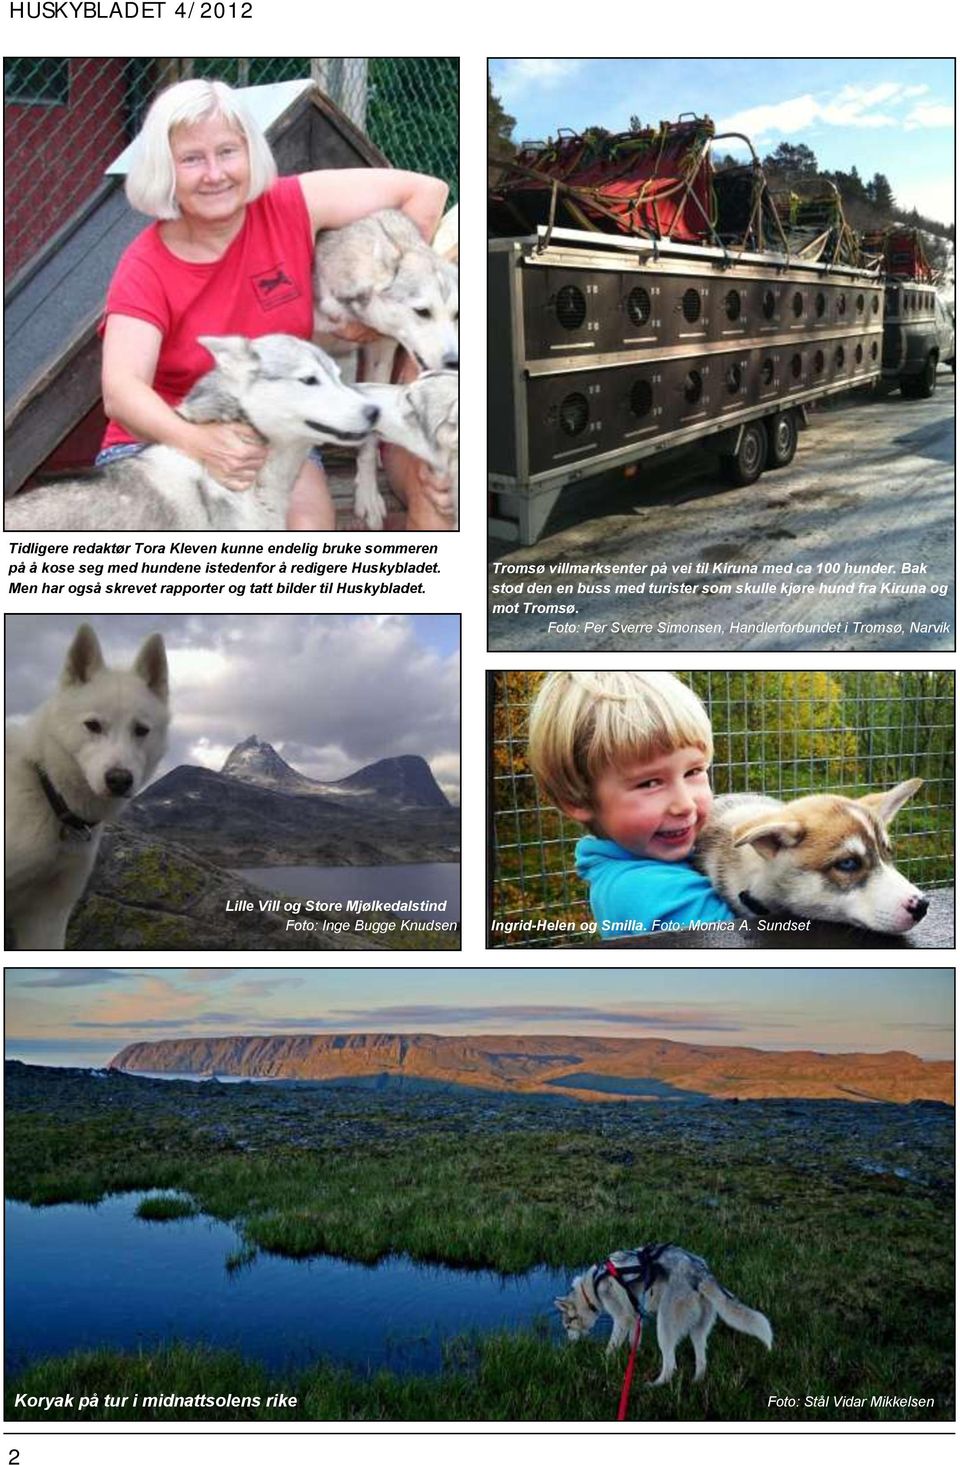 Bak stod den en buss med turister som skulle kjøre hund fra Kiruna og mot Tromsø.